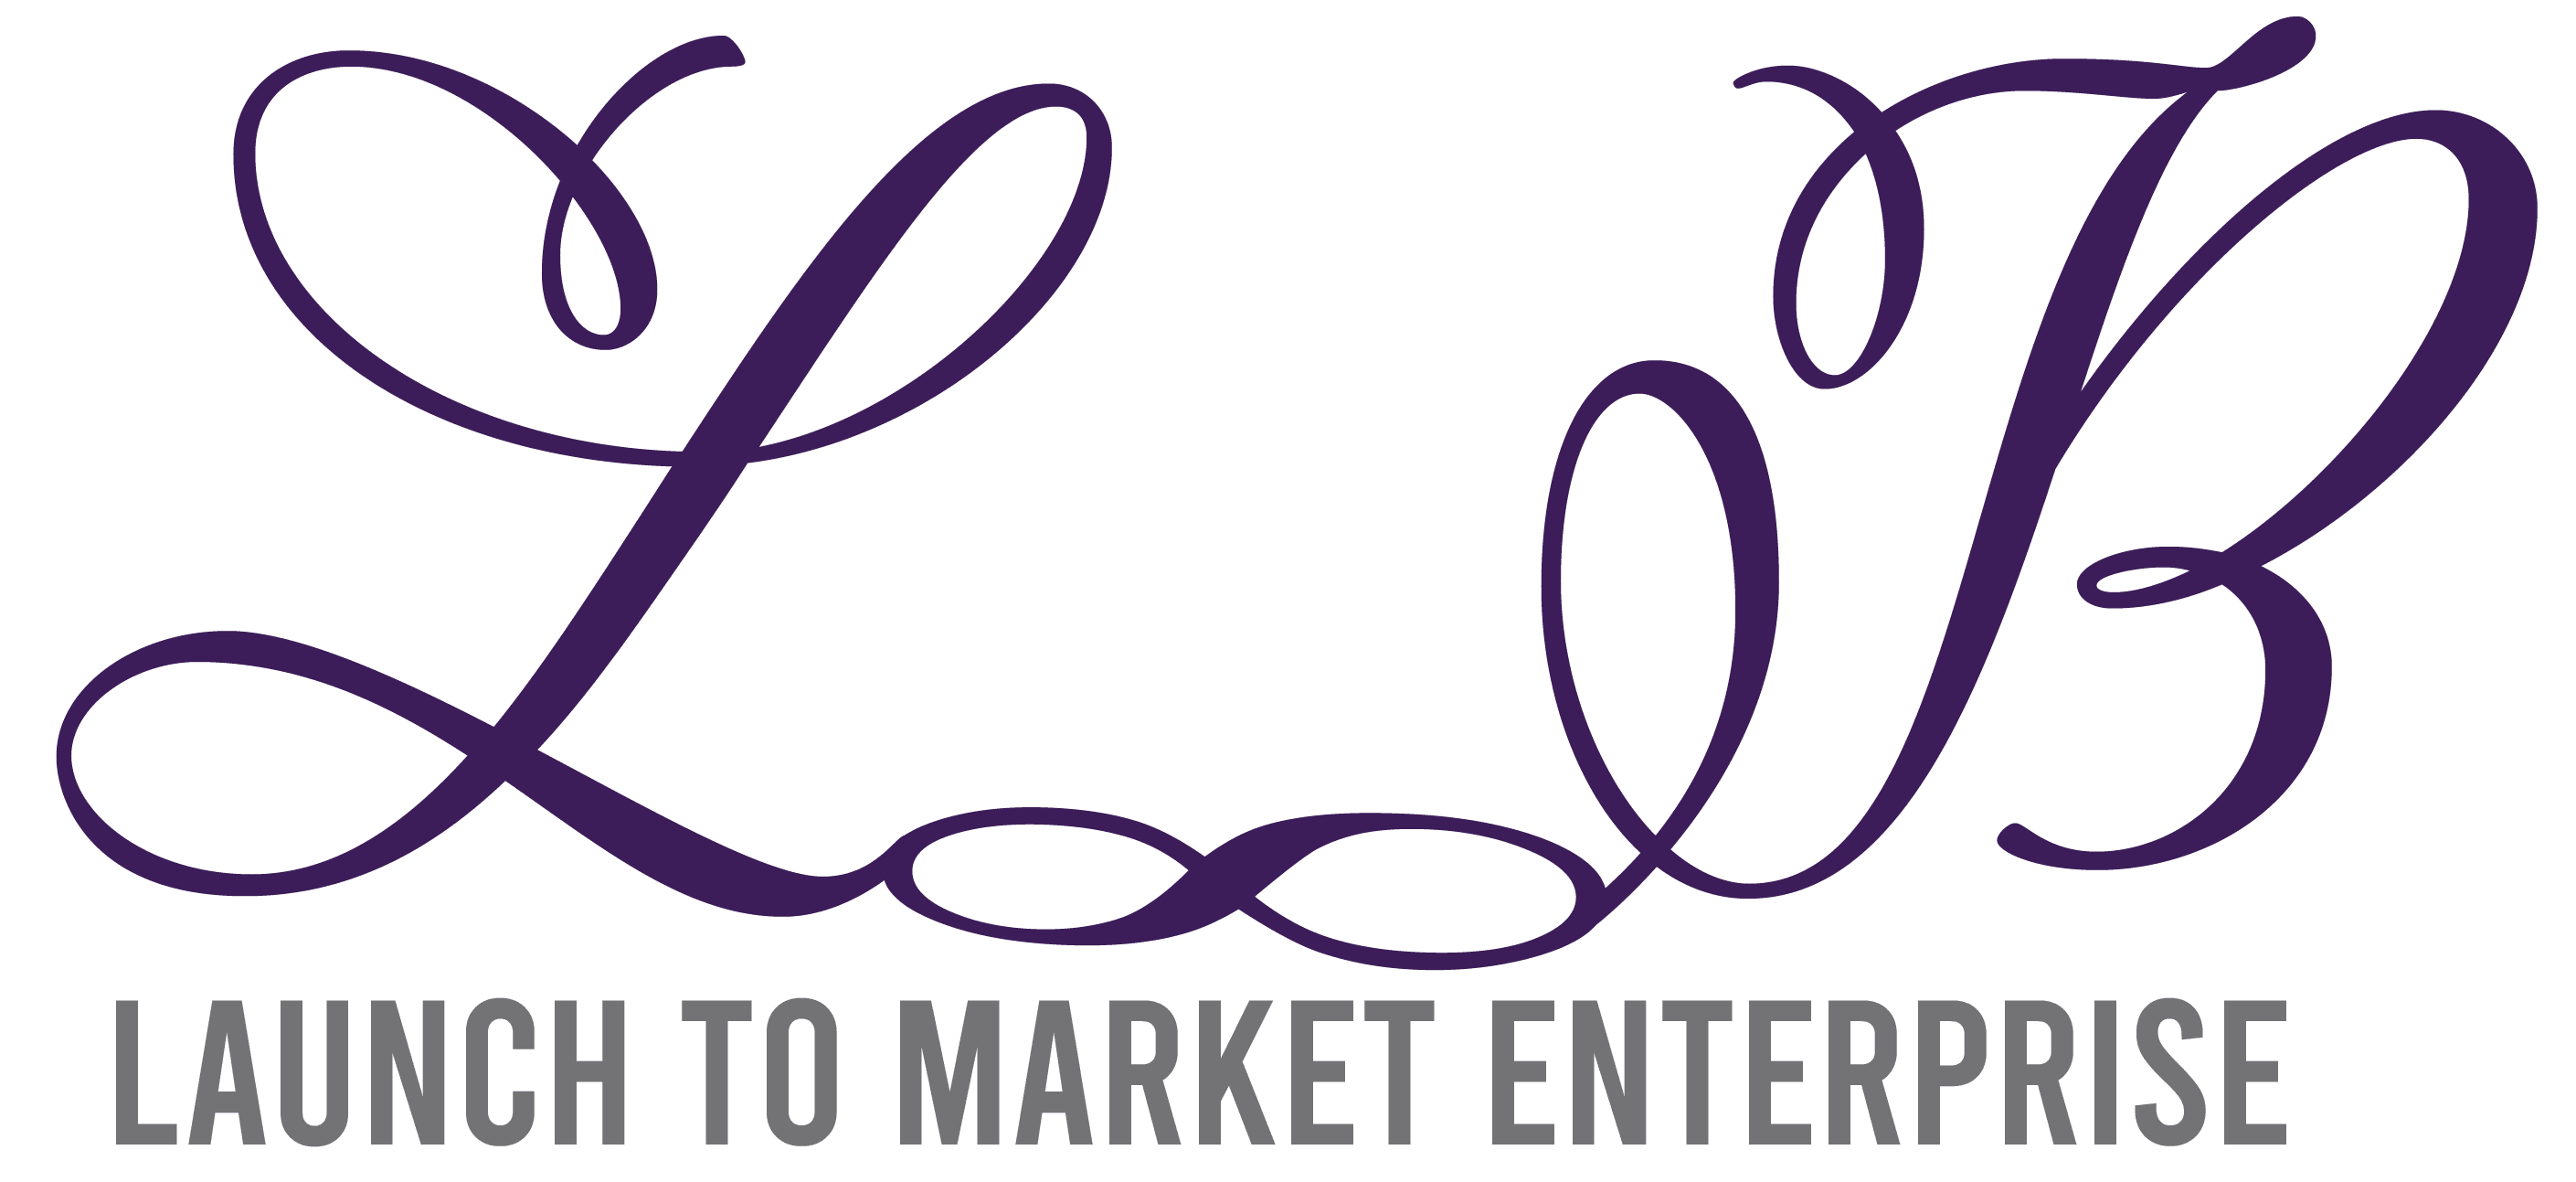 Launch To Market Enterprise